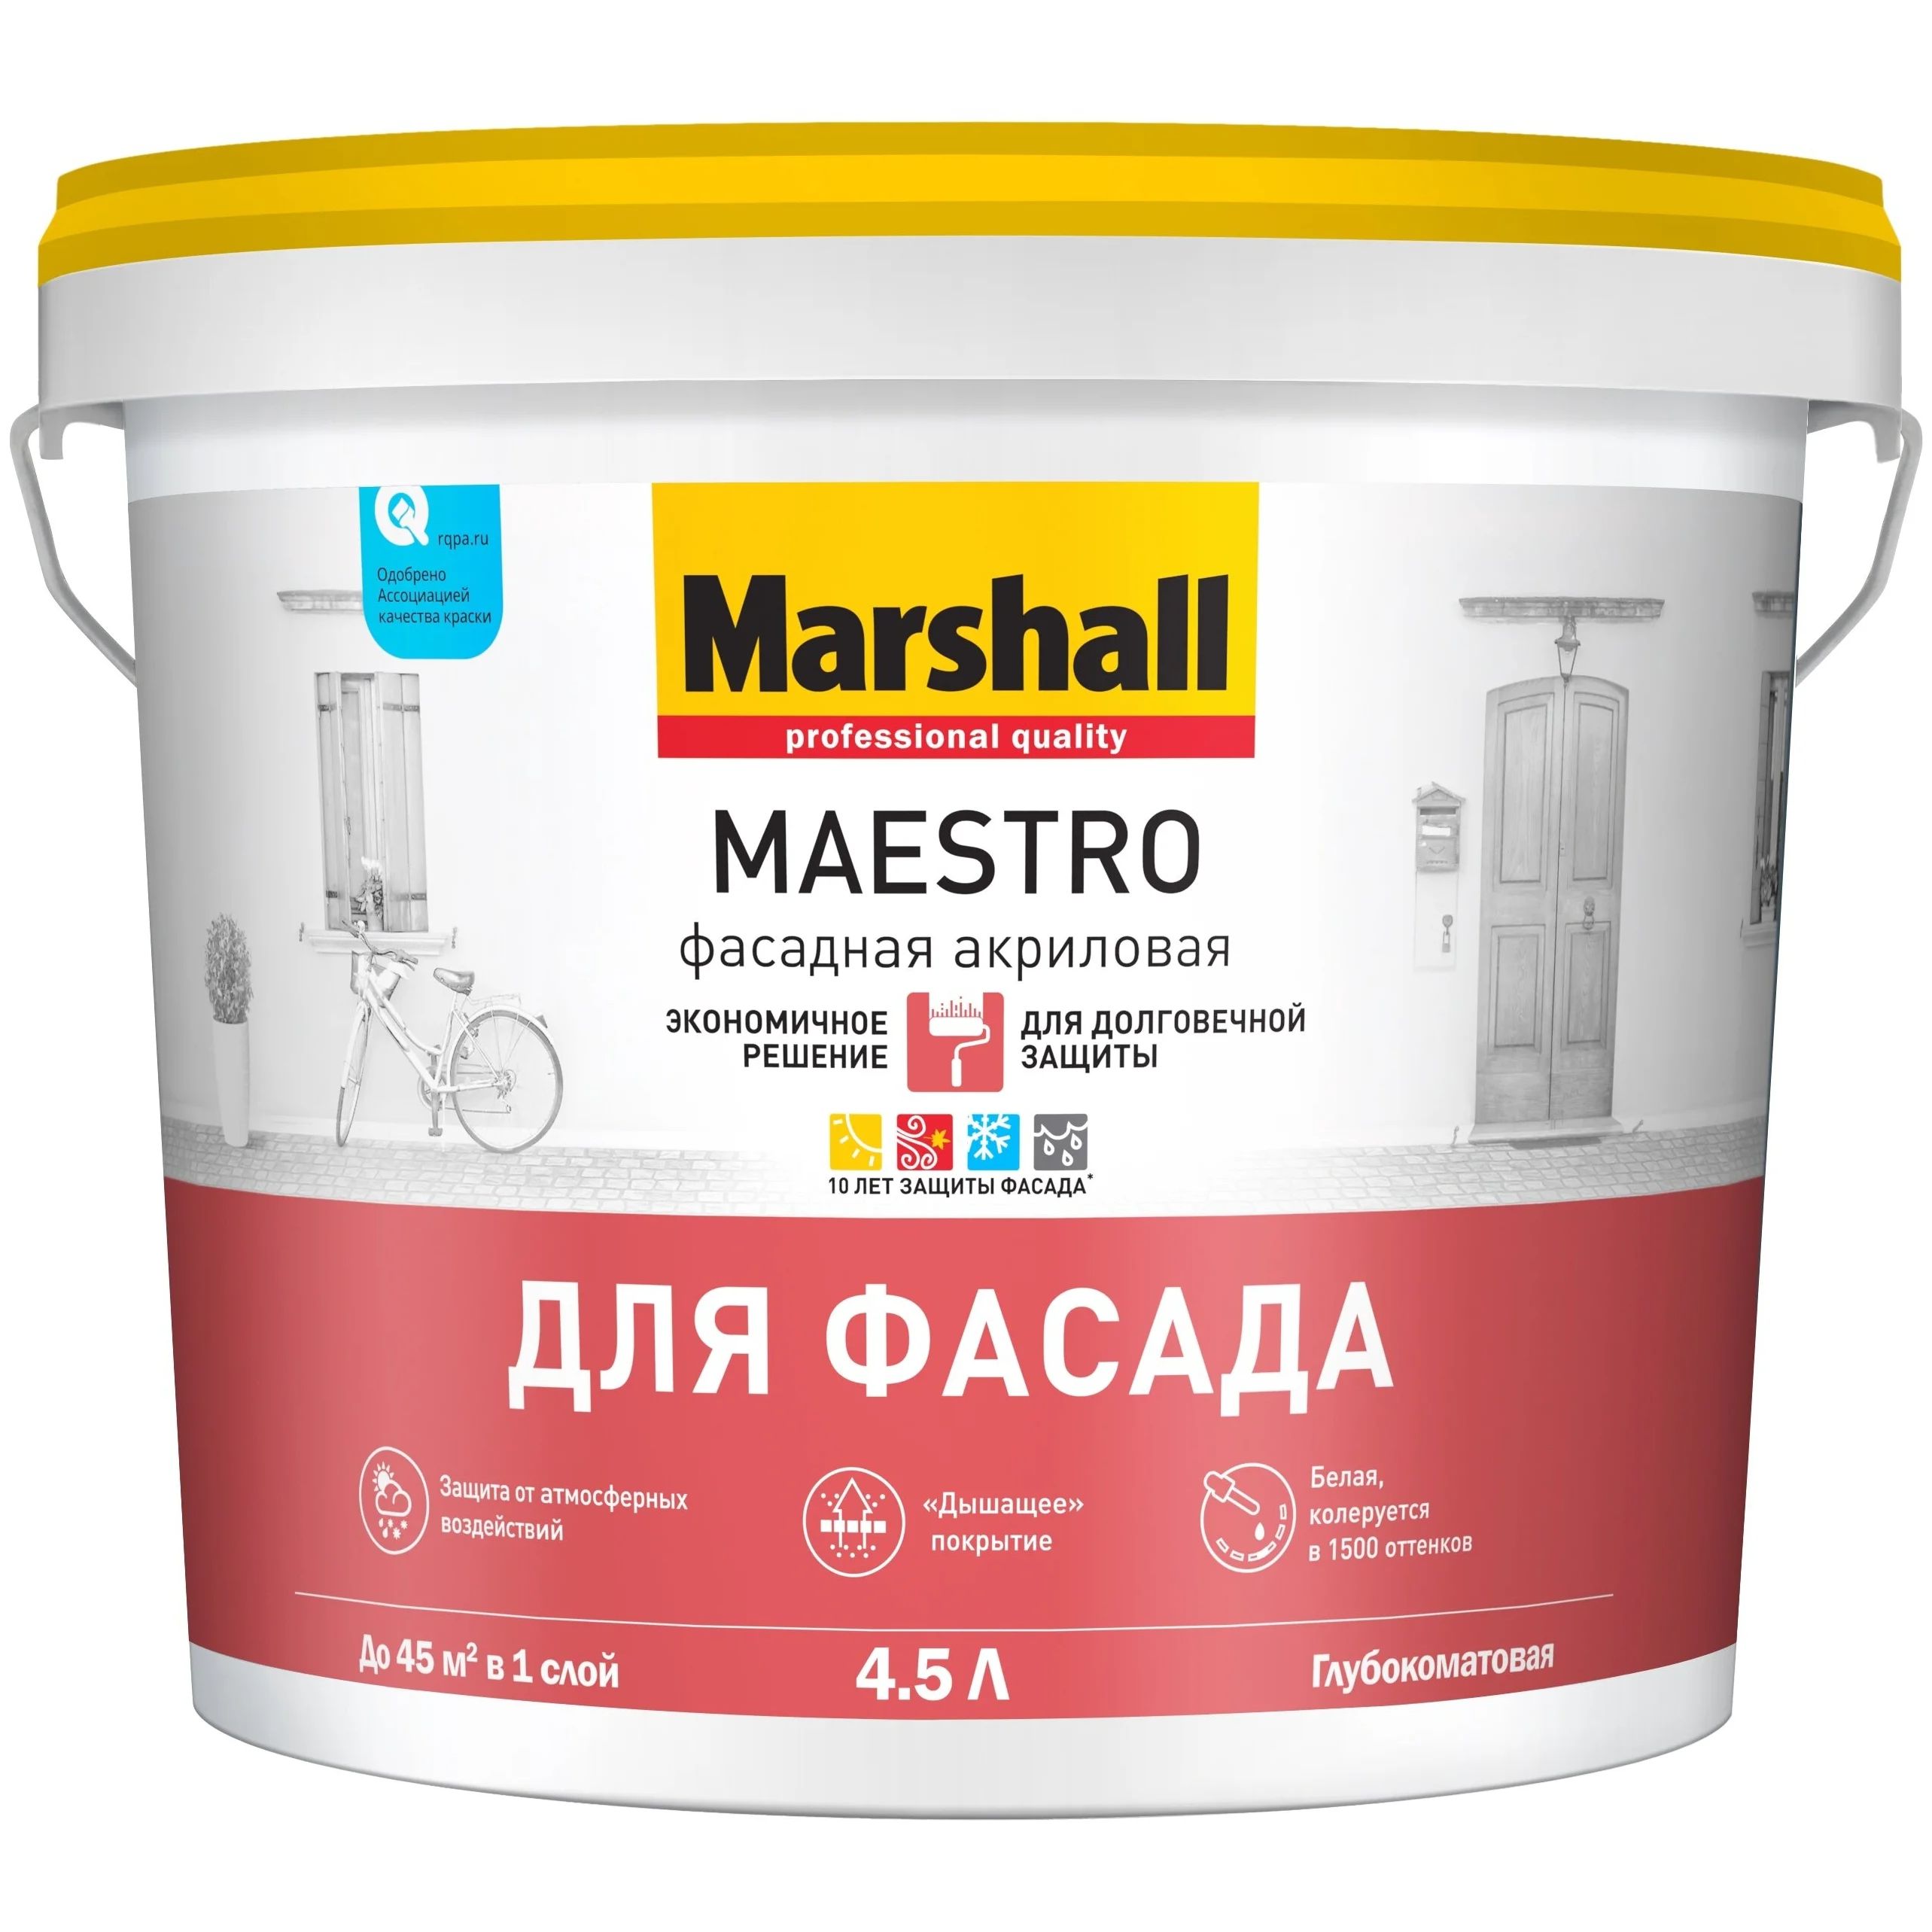 Краска Marshall Maestro фасадная акриловая, глубокоматовая, BC, 4,5 л краска marshall export 2 латексная глубокоматовая база bw 900 мл